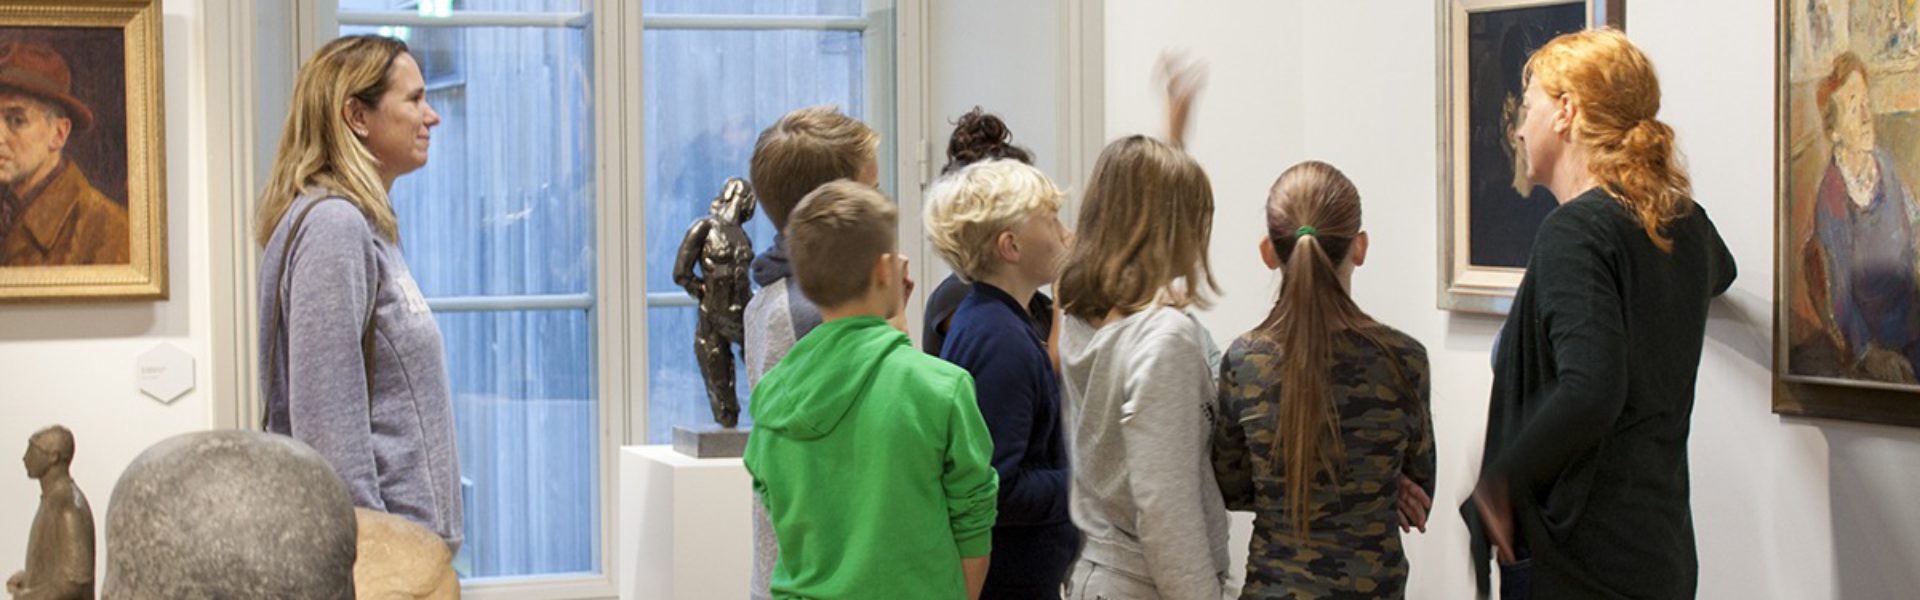 Musea Zutphen, Museum Henriette Polak, Onderwijs, Educatie, Lespakket, Rondleidngen , Basisonderwijs, Museumeduactie, Zutphen, Hof van HeeckerenZutphen.